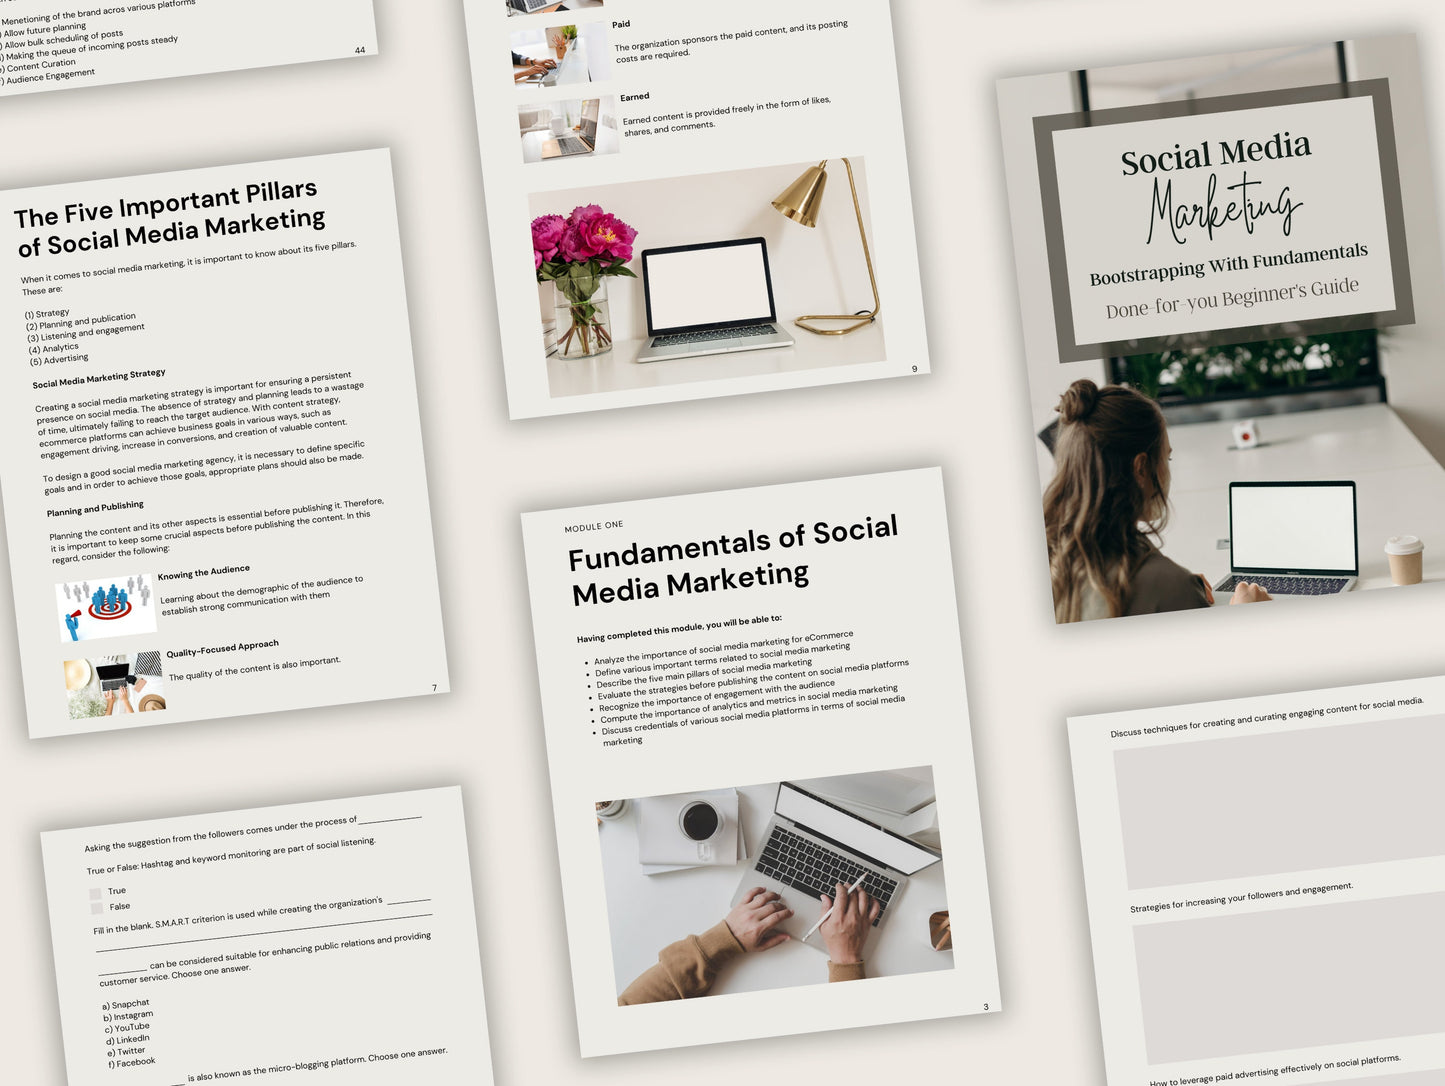 Libro electrónico del curso en línea Master Reell Rights Social Media Marketing